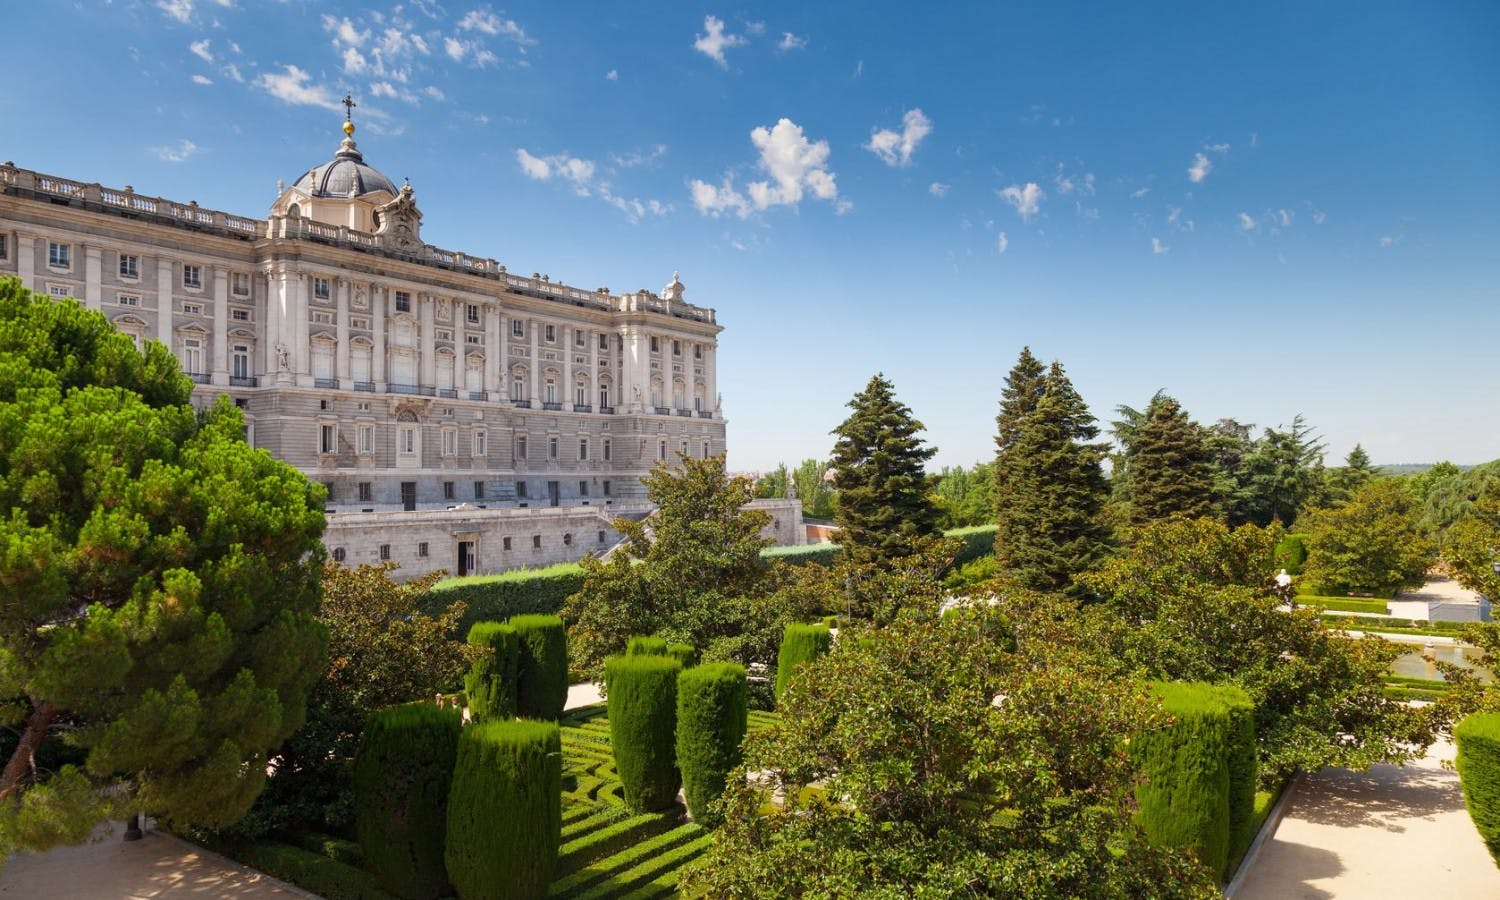 Gå-forbi-køen-billett og guidet omvising til Det kongelige slott i Madrid